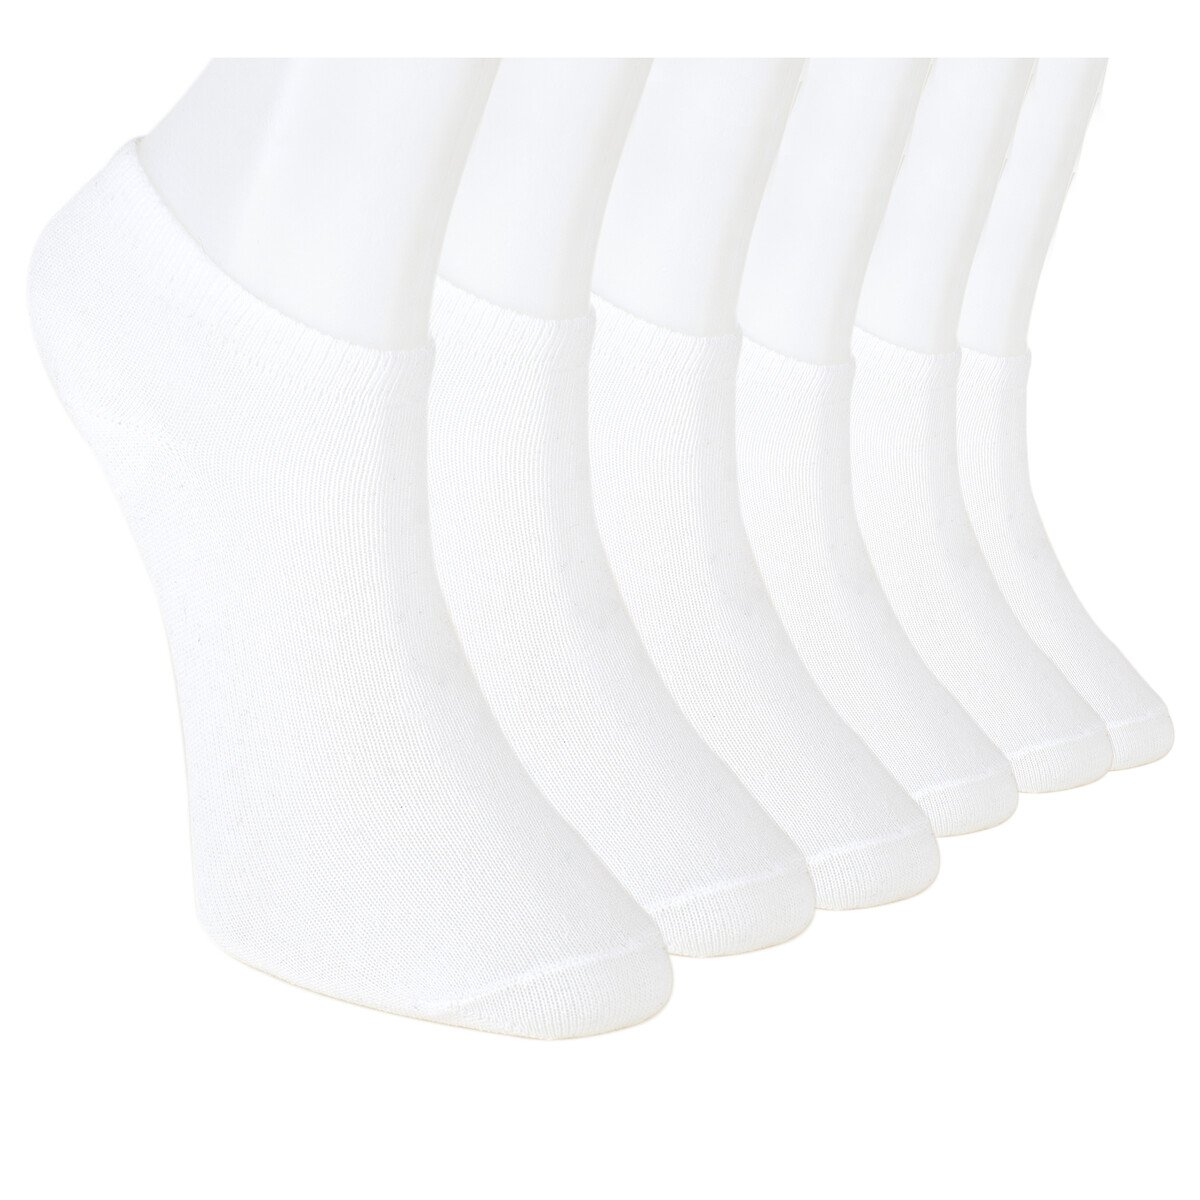 Solonine Premium 6'lı Unisex Patik Çorap Beyaz